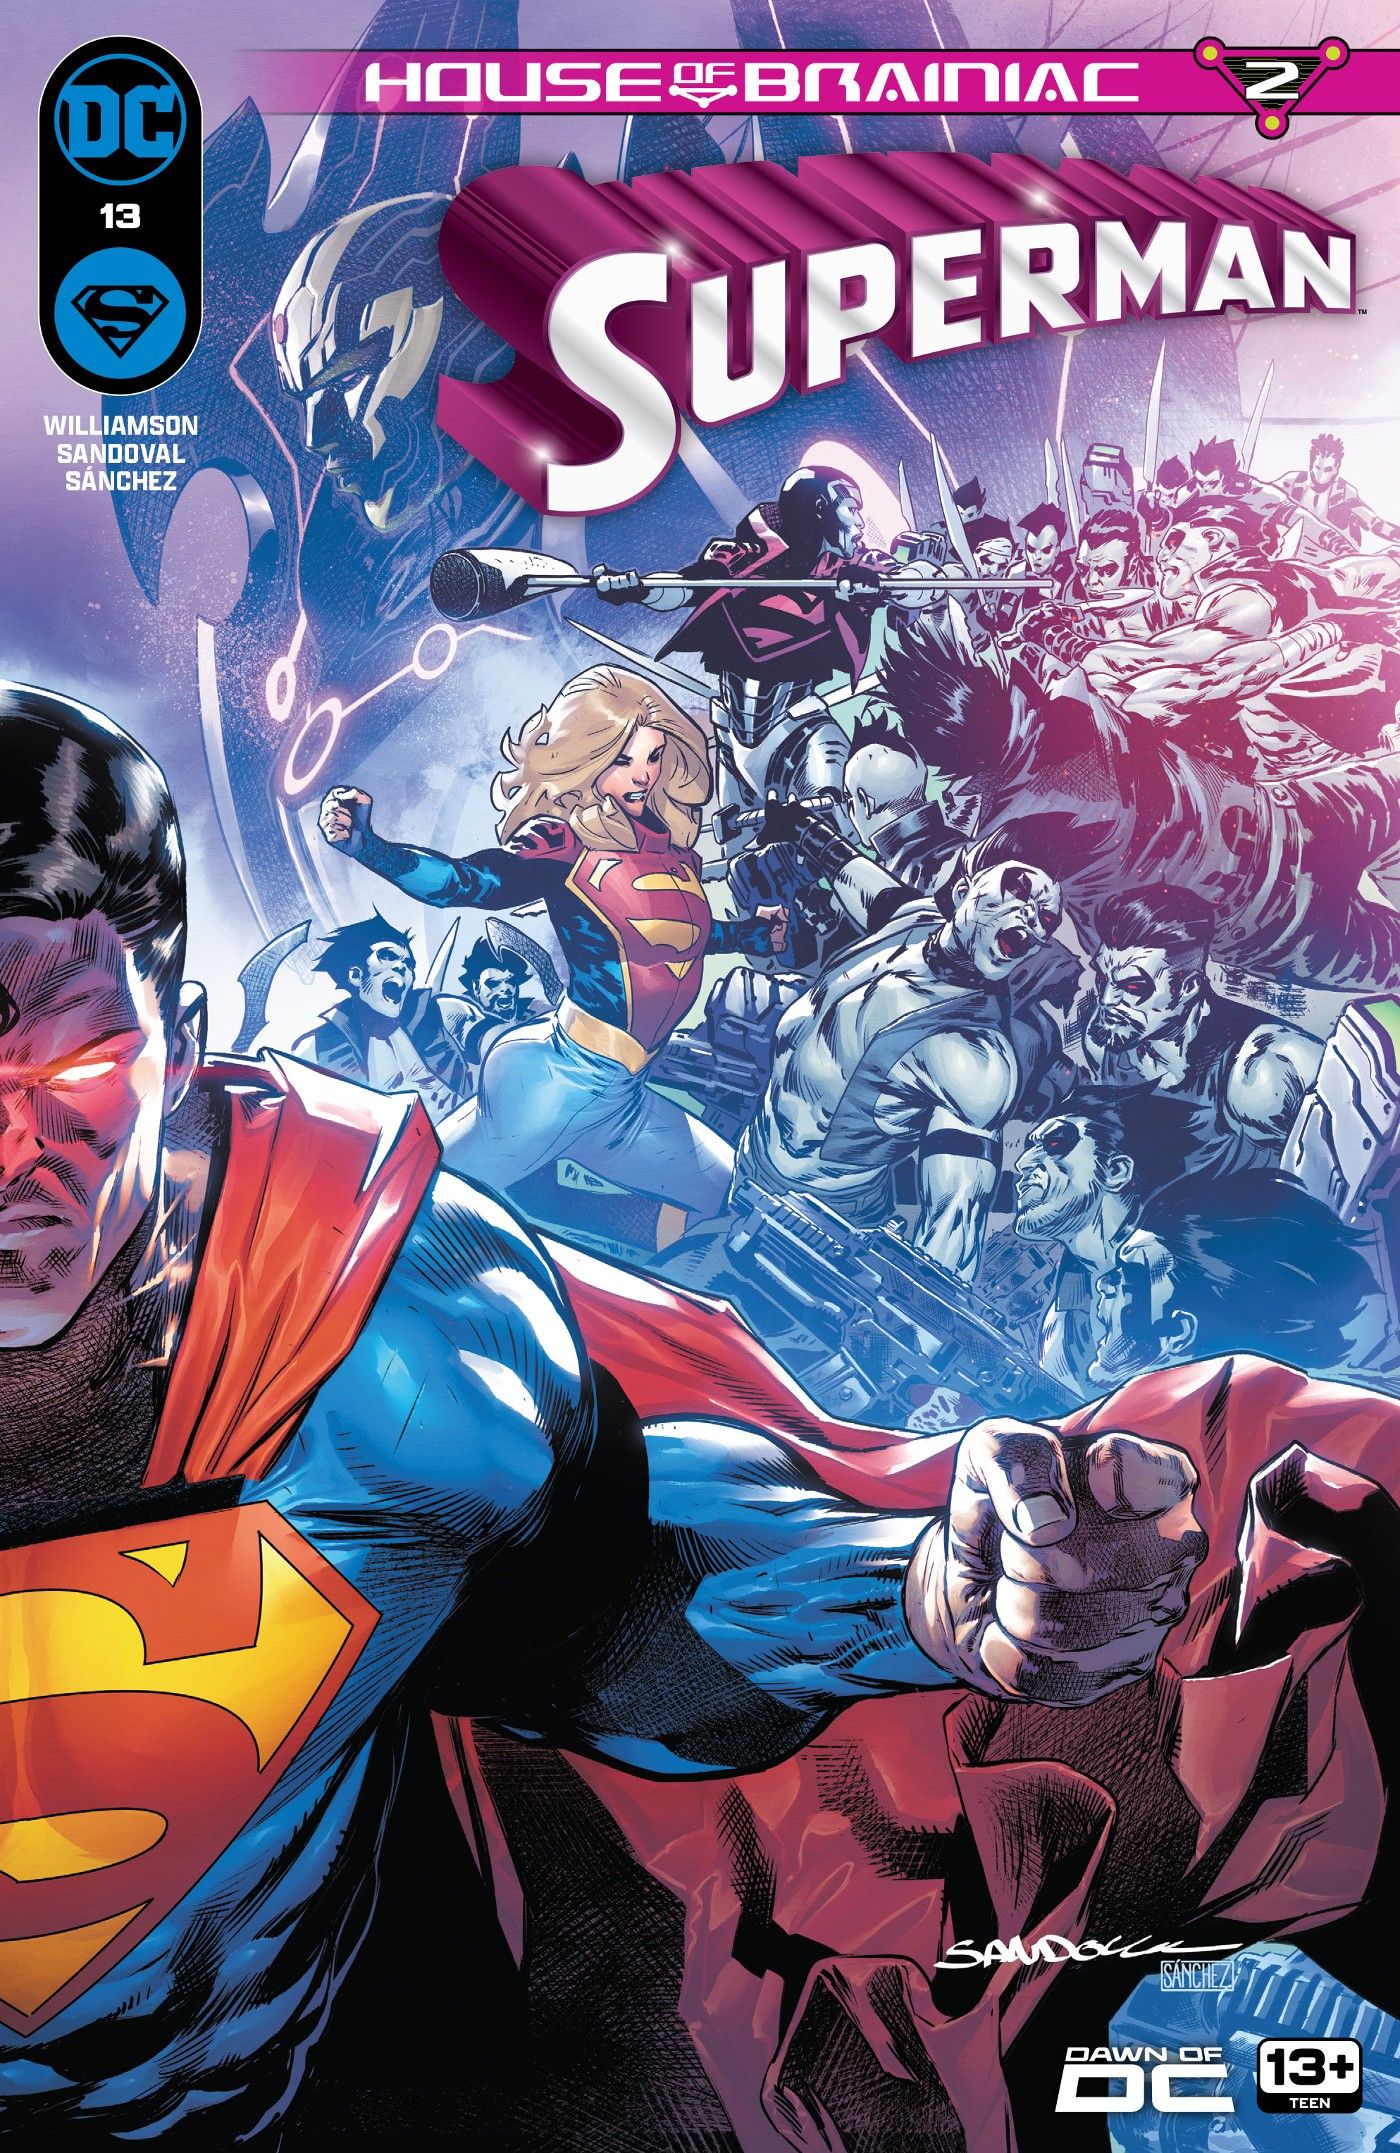 Portada principal de Superman 13: Superman mirando con ojos rojos brillantes.  Detrás de él, Supergirl y Steel luchan contra los zarnianos.